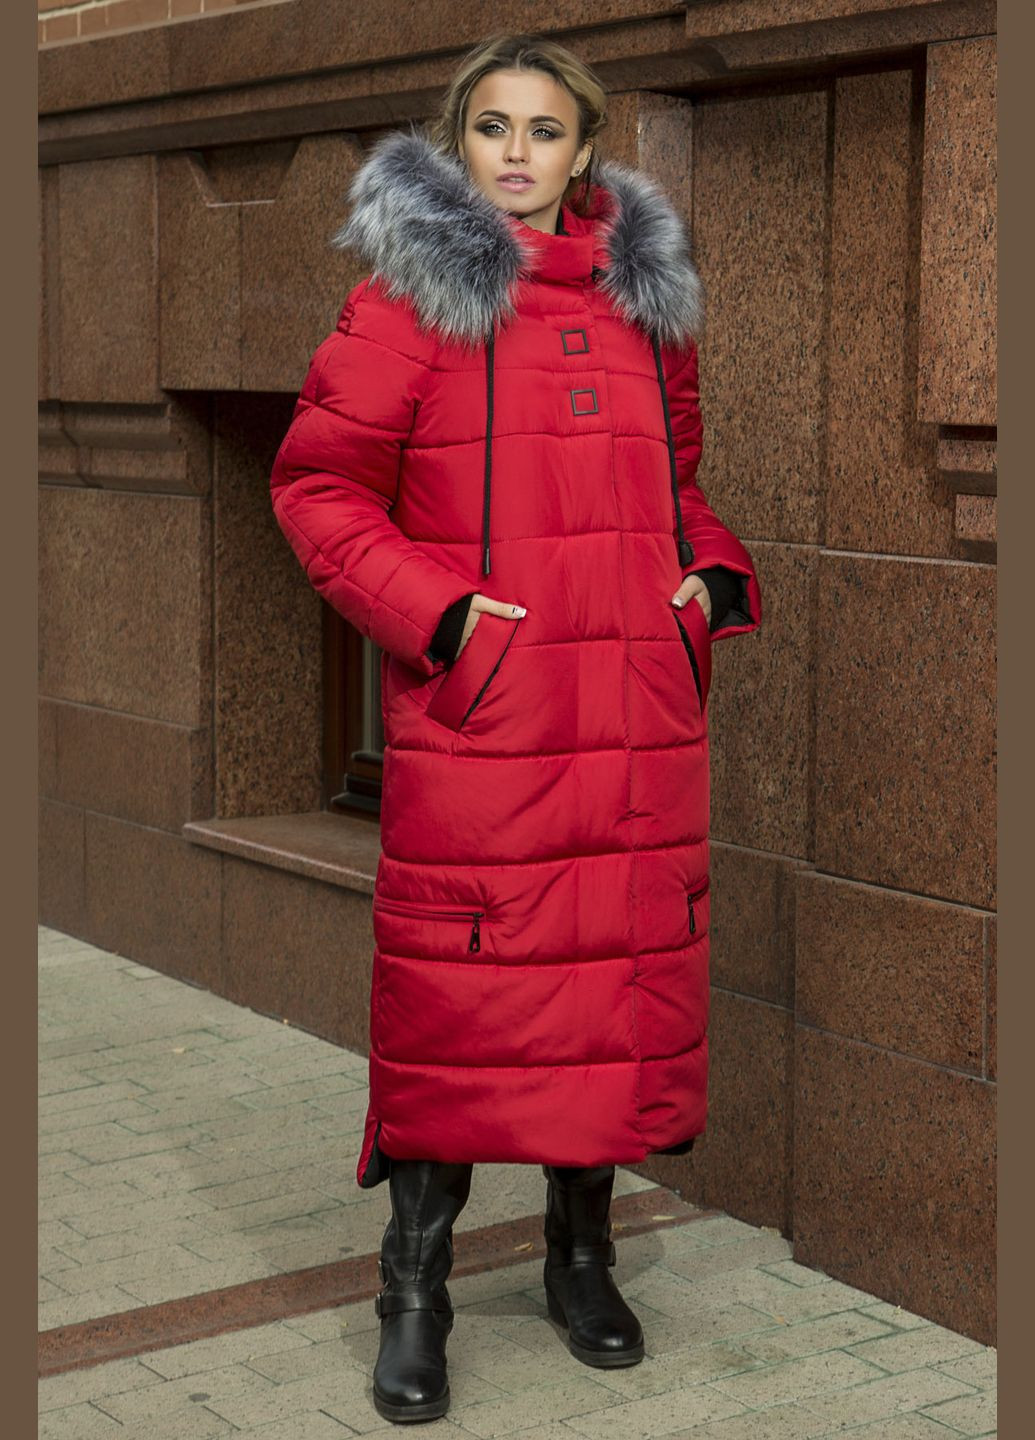 Красная зимняя зимняя куртка barbara красный MioRichi